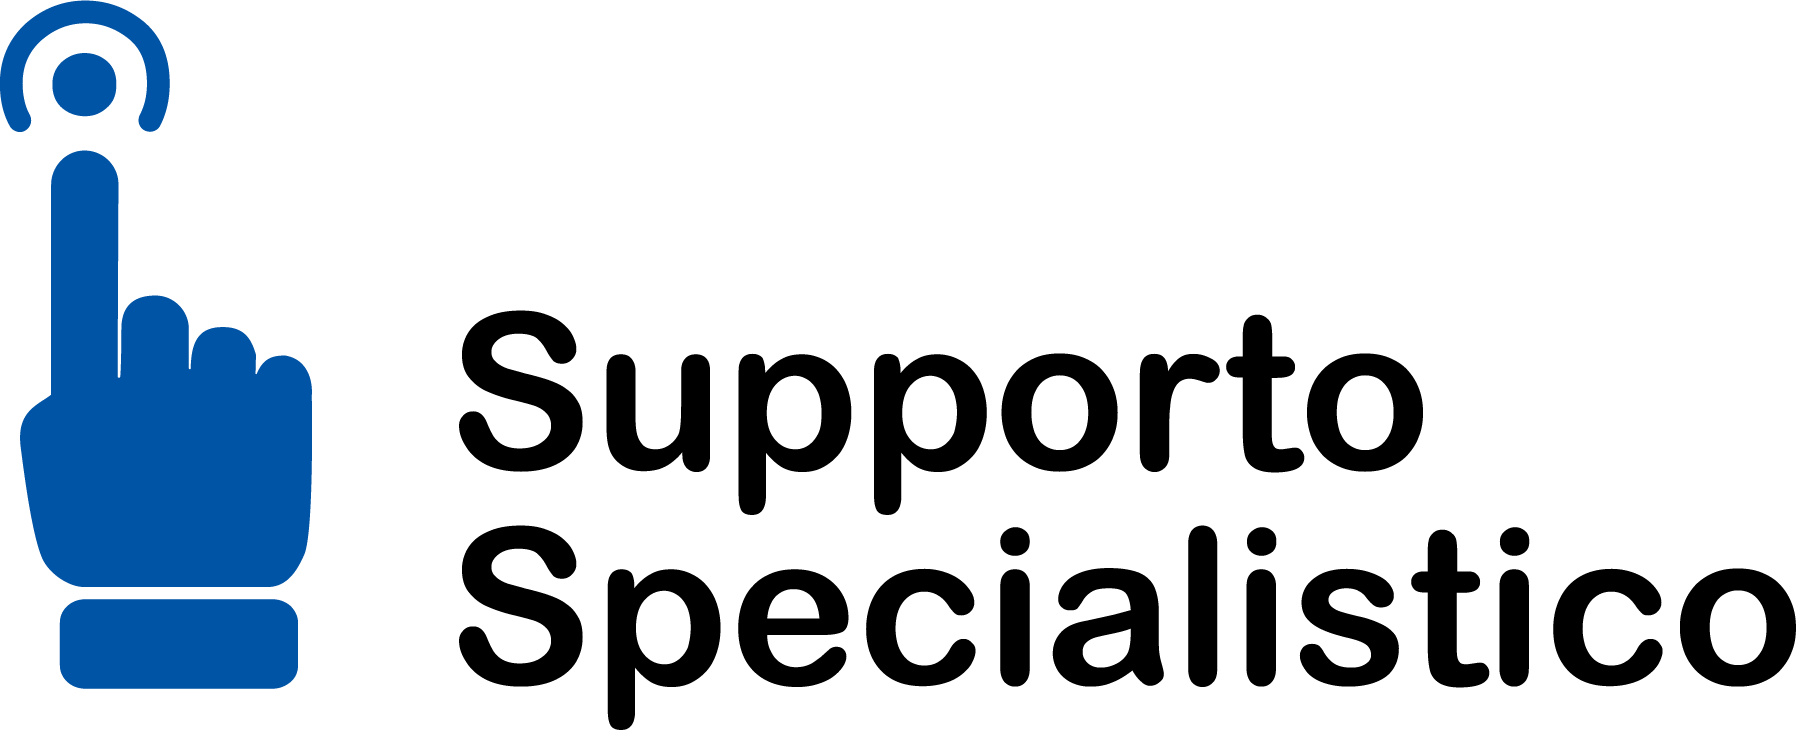 Supporto Specialistico Registro Imprese icona-supporto-specialistico-colori_4206_1.png (Art. corrente, Pag. 1, Foto logo)